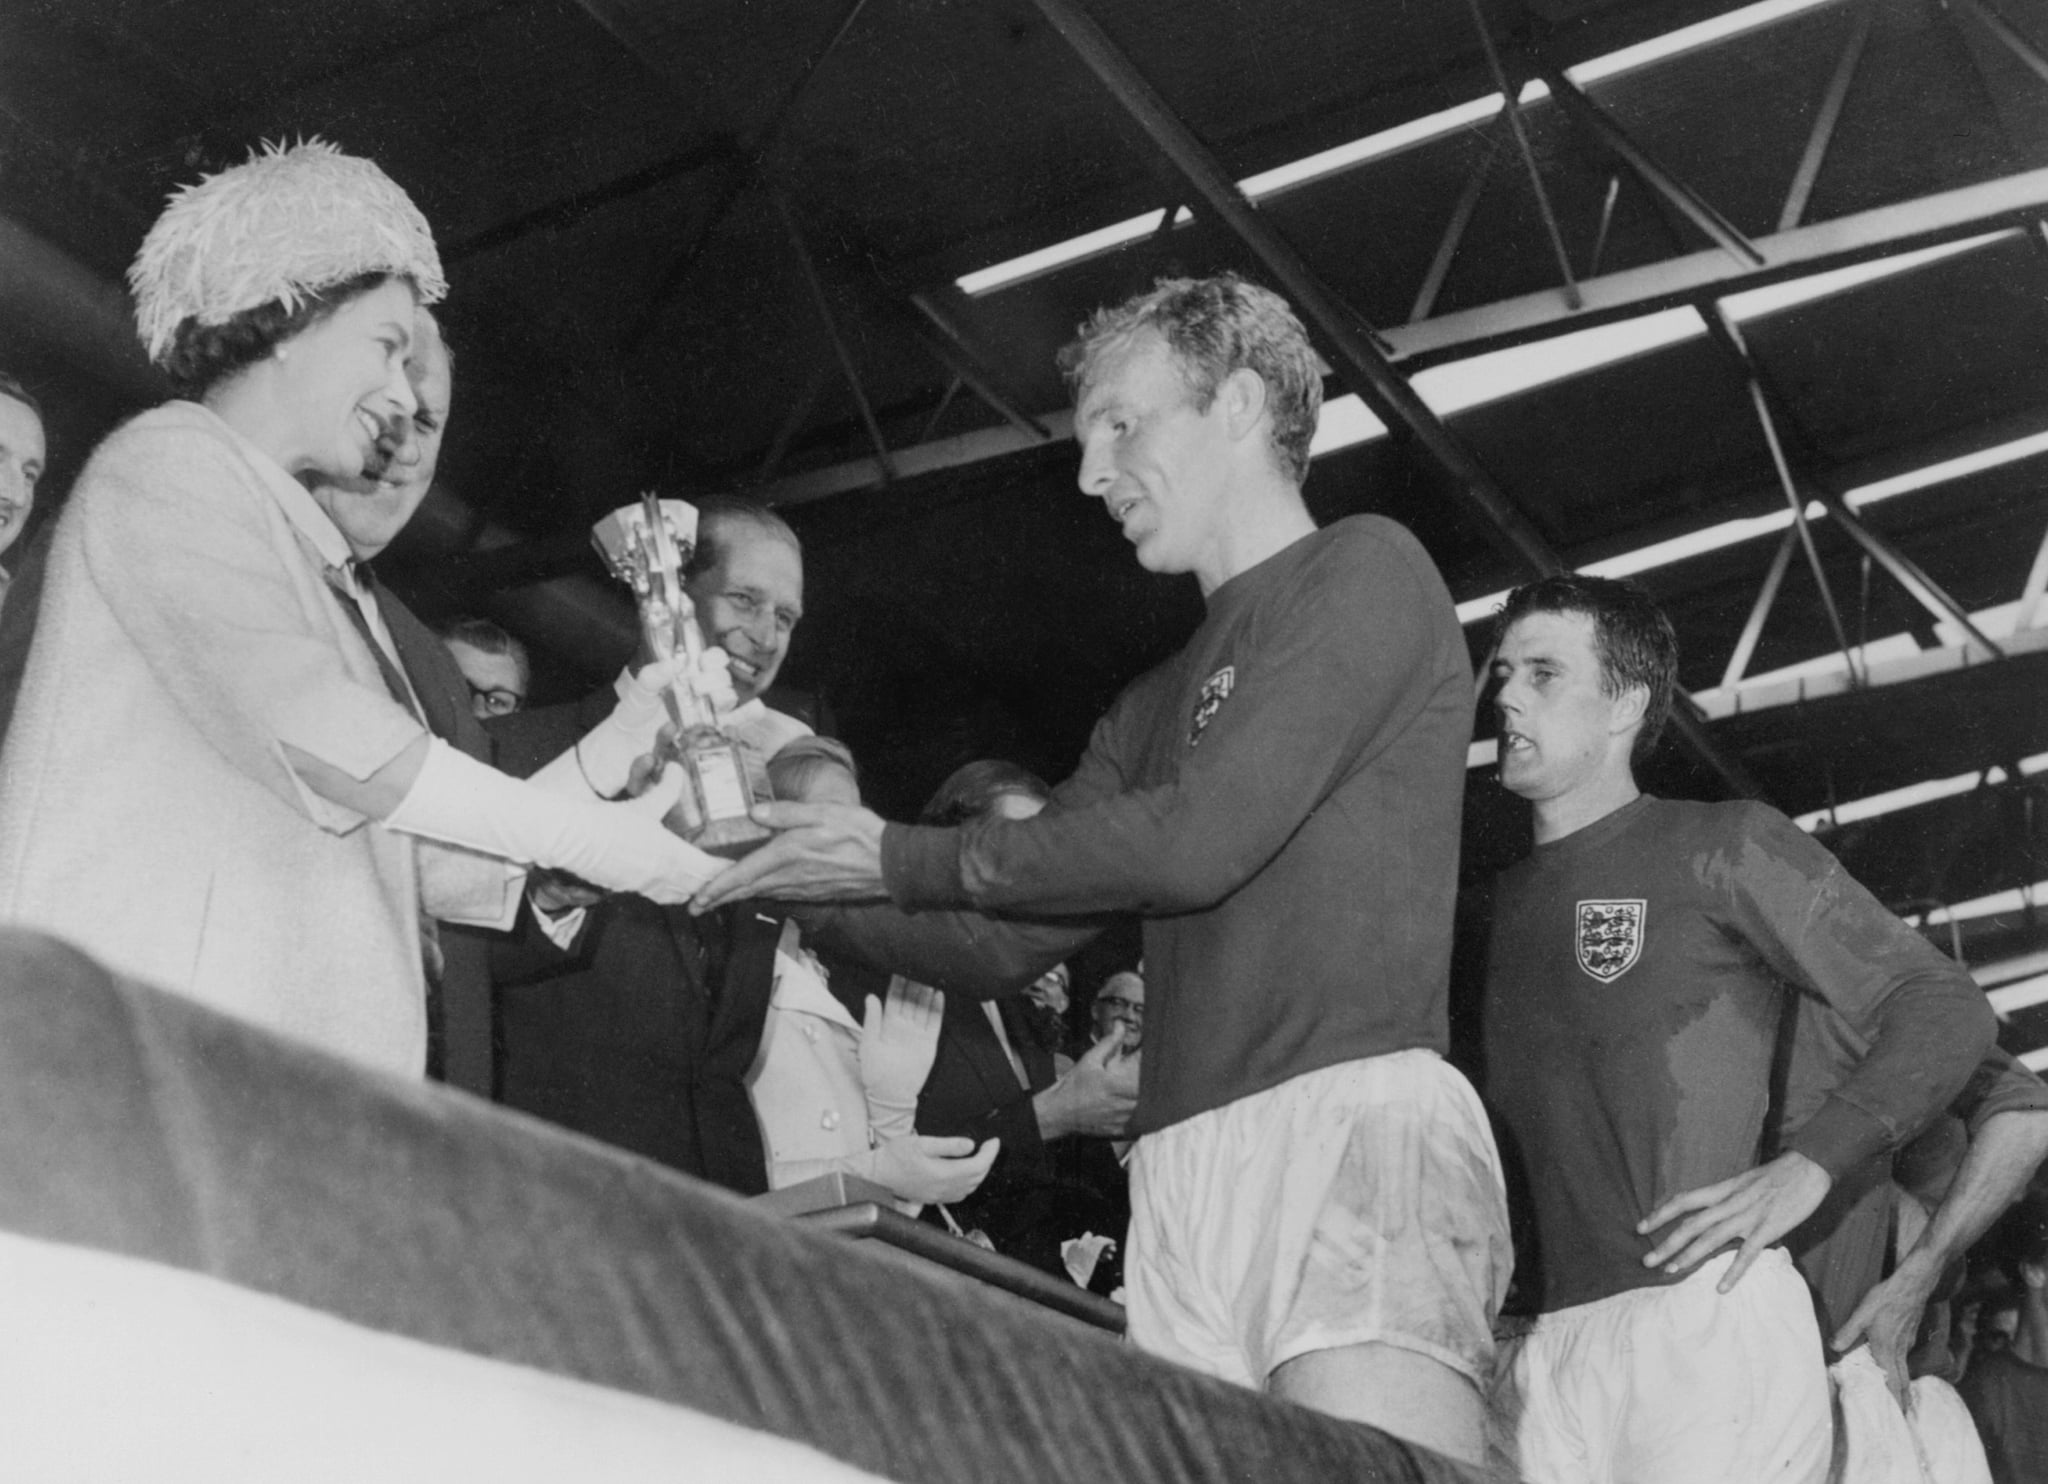 Queen Elizabeth II presents the Jules Rimet Cup to Bobby Moore in 1966